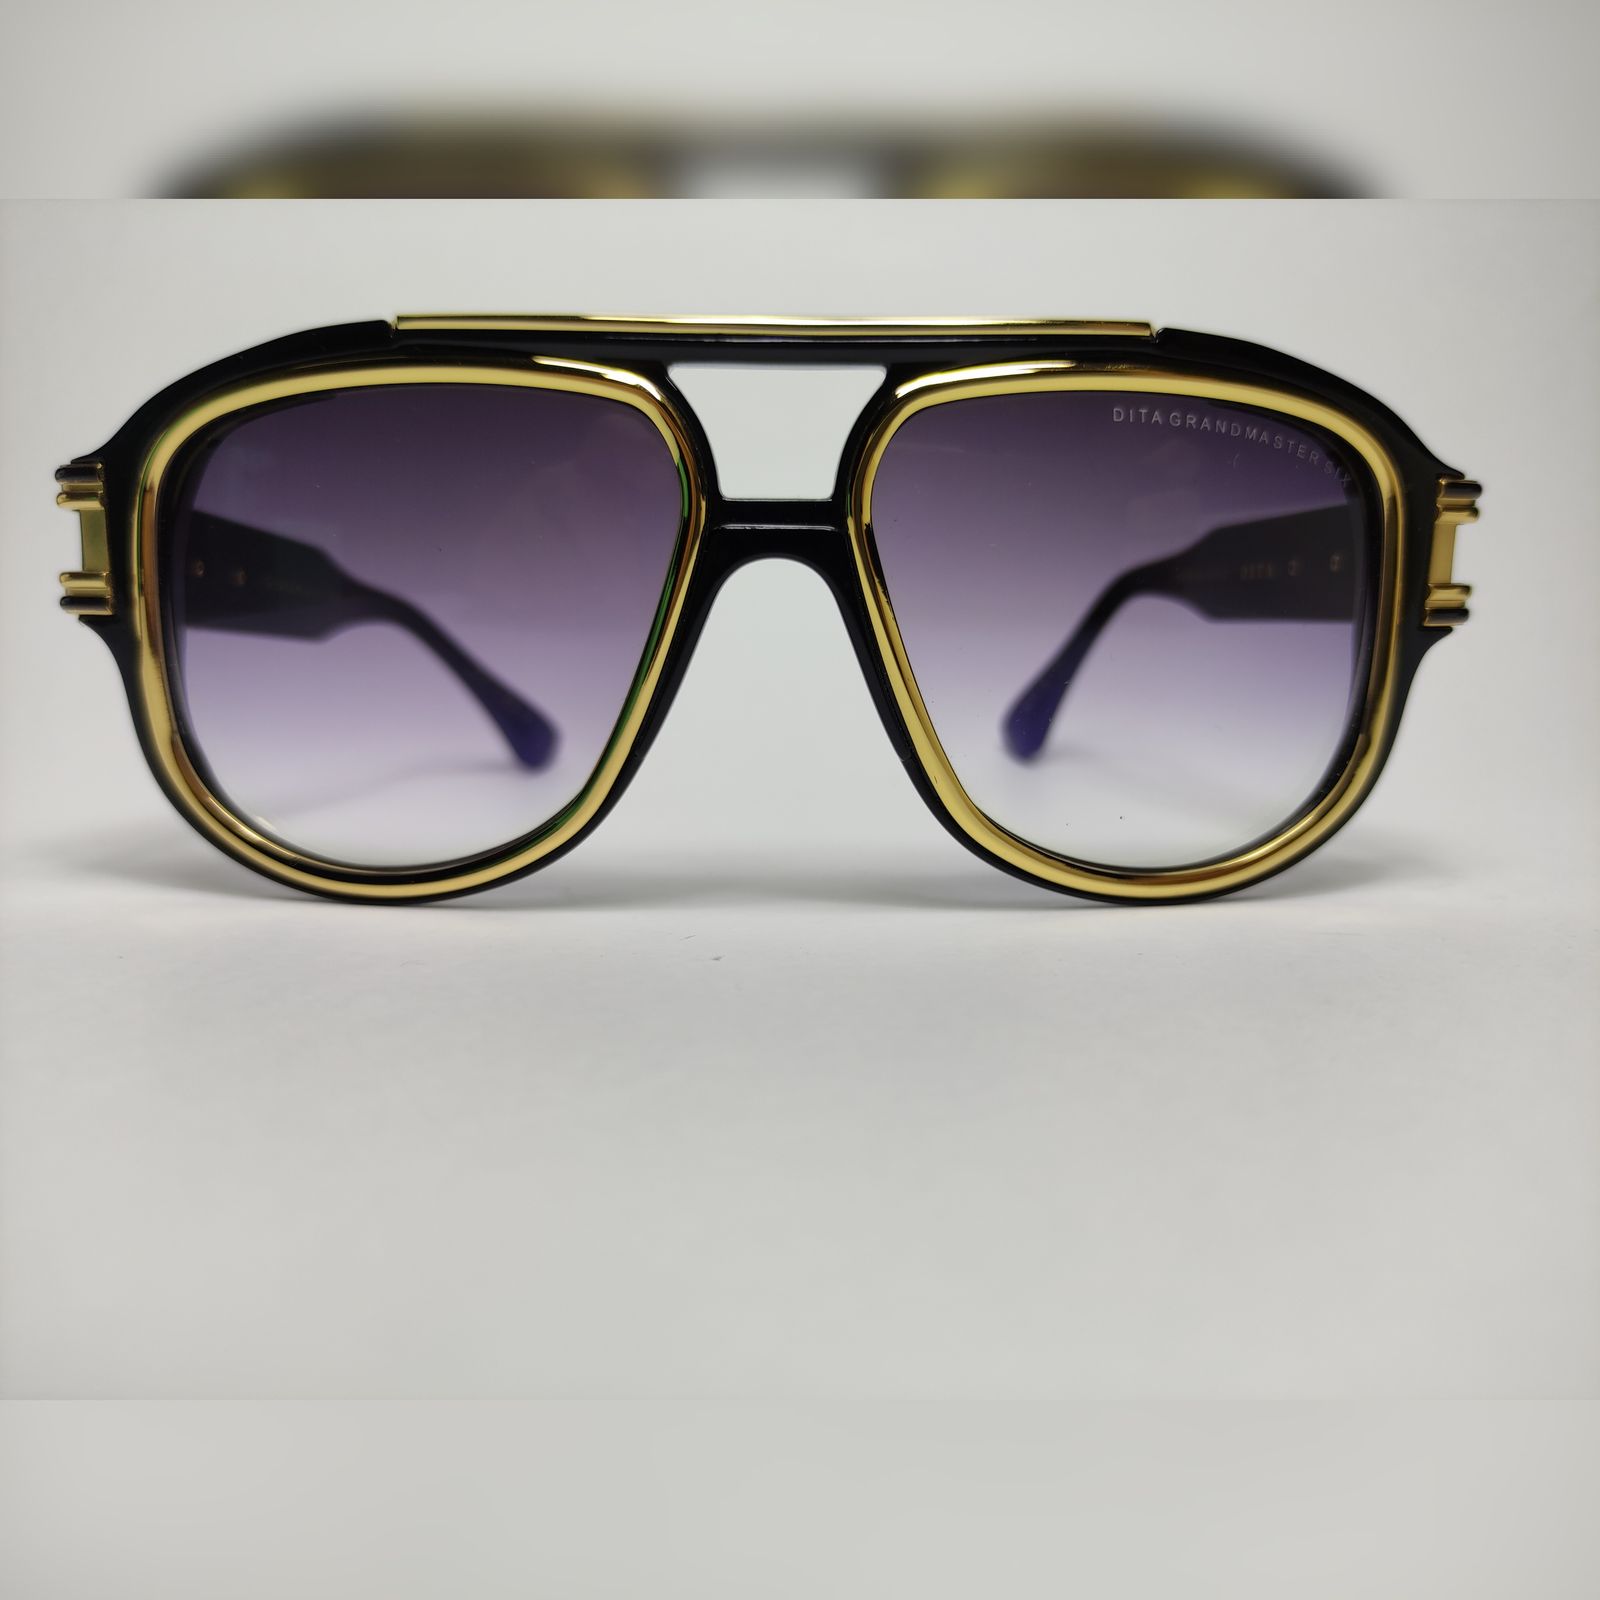 عینک آفتابی دیتا مدل سری Grandmaster 6 DTS-900 -  - 3